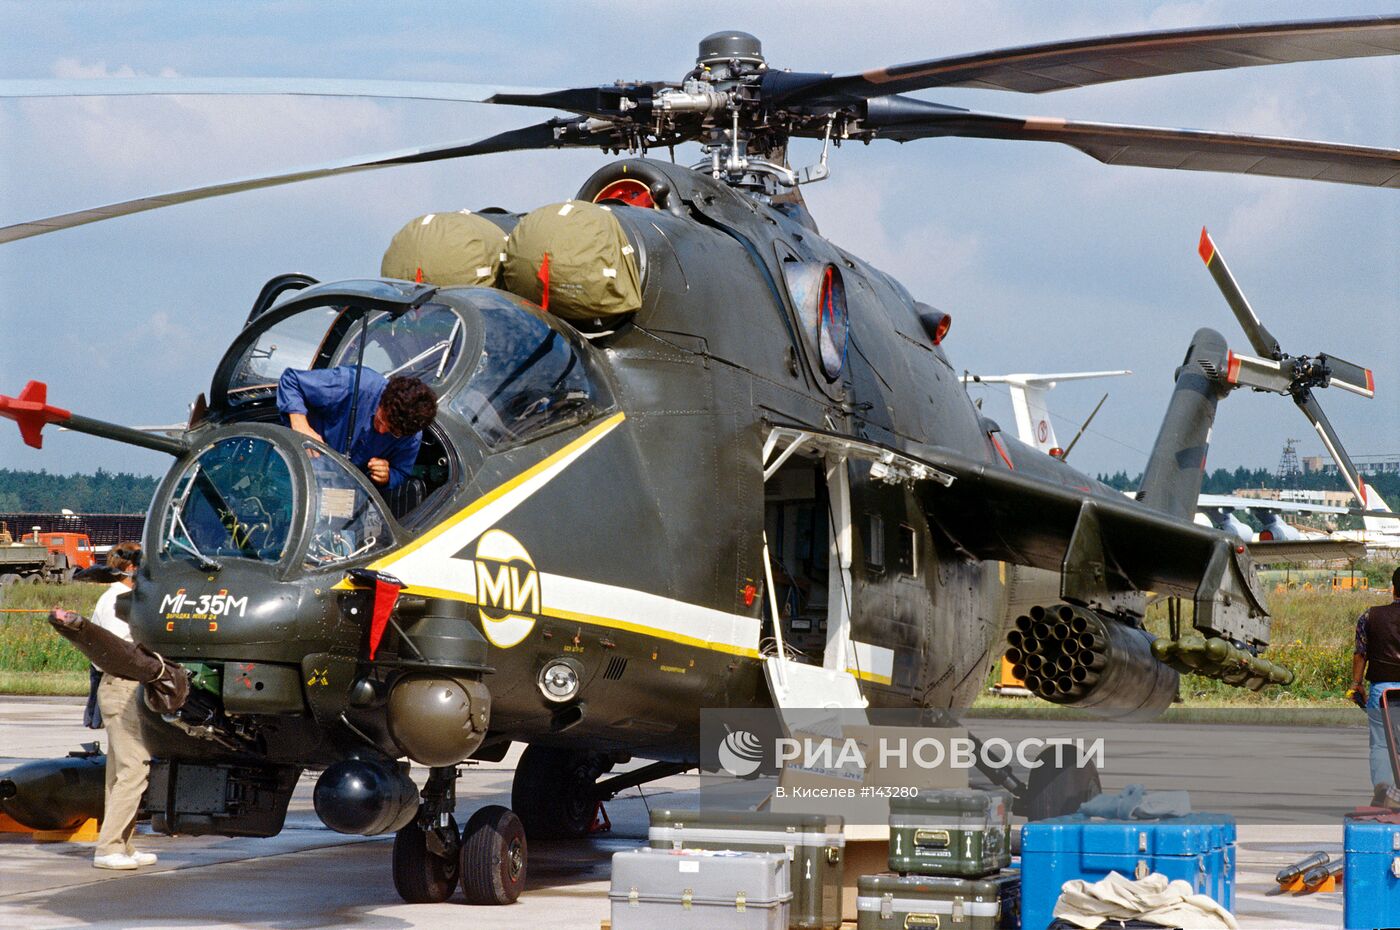 Многоцелевой ударный вертолет "Ми-35М"